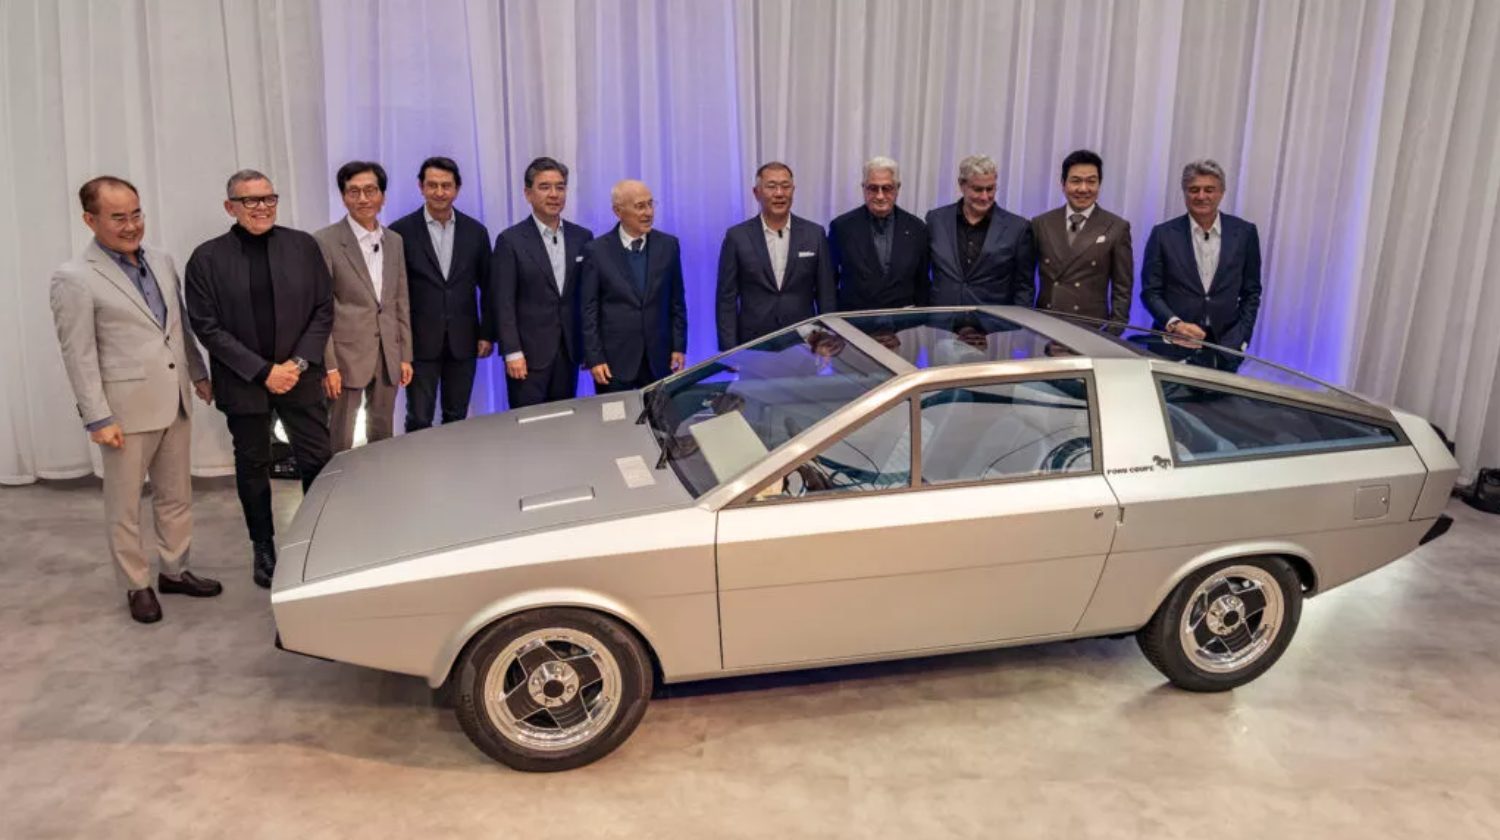 Os vários responsáveis que participaram no projecto de renascimento do Hyundai Pony Coupé Concept